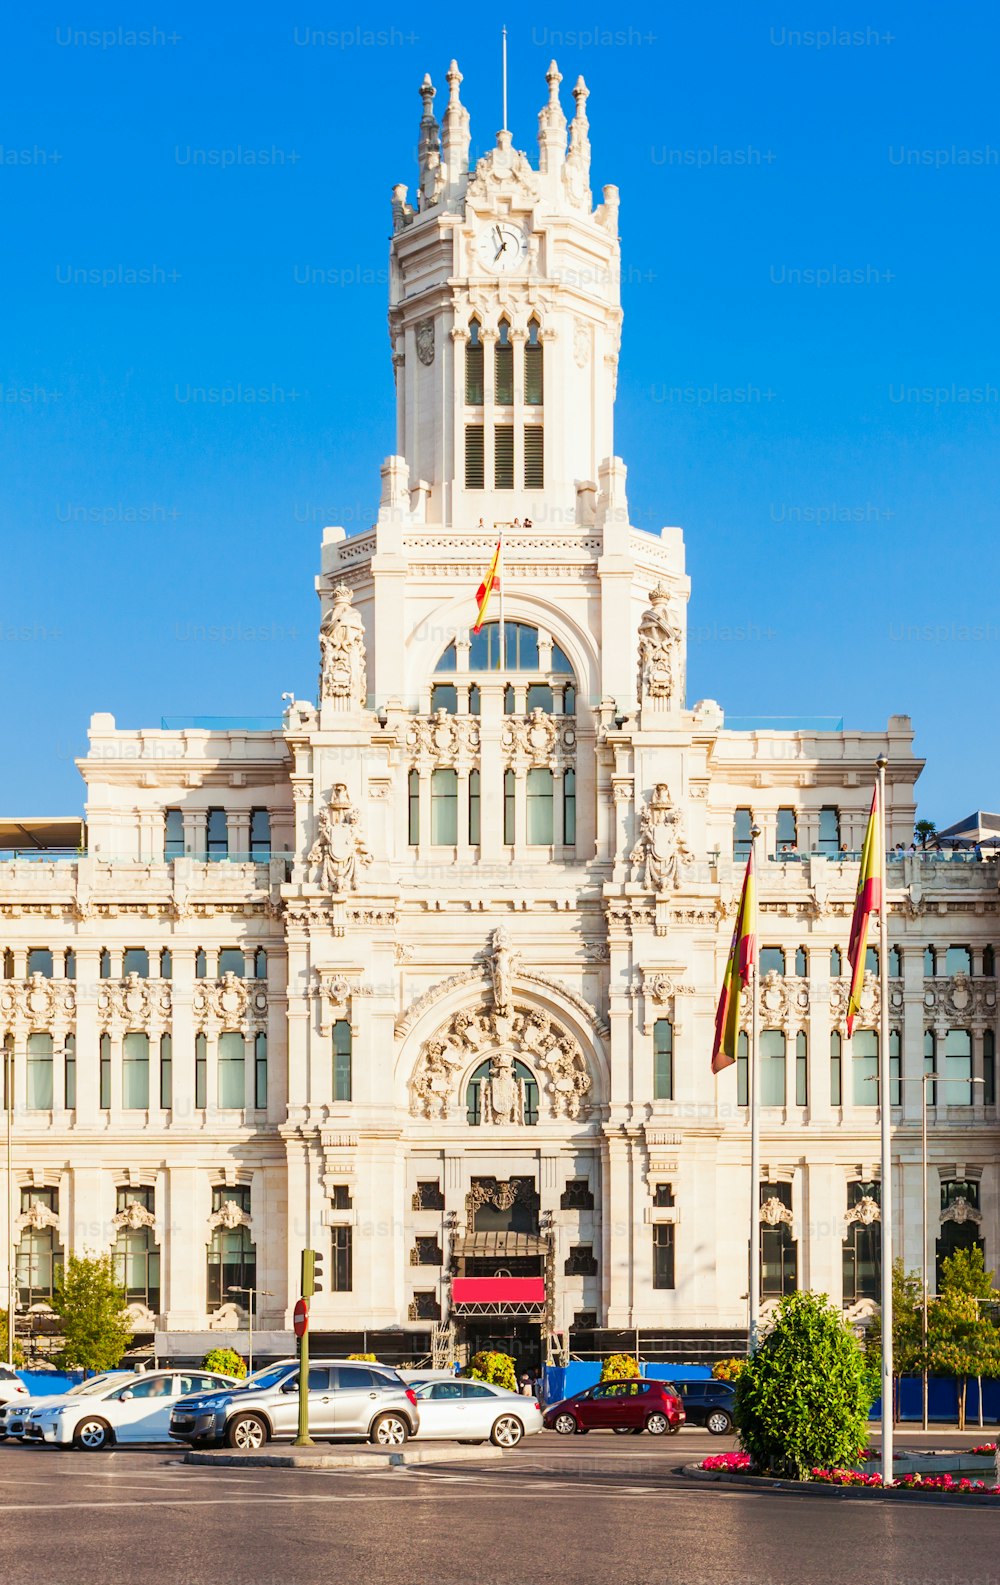 O Palácio de Cibele ou Palácio de Cibeles é um palácio localizado na Plaza de Cibeles, no centro da cidade de Madrid, Espanha.